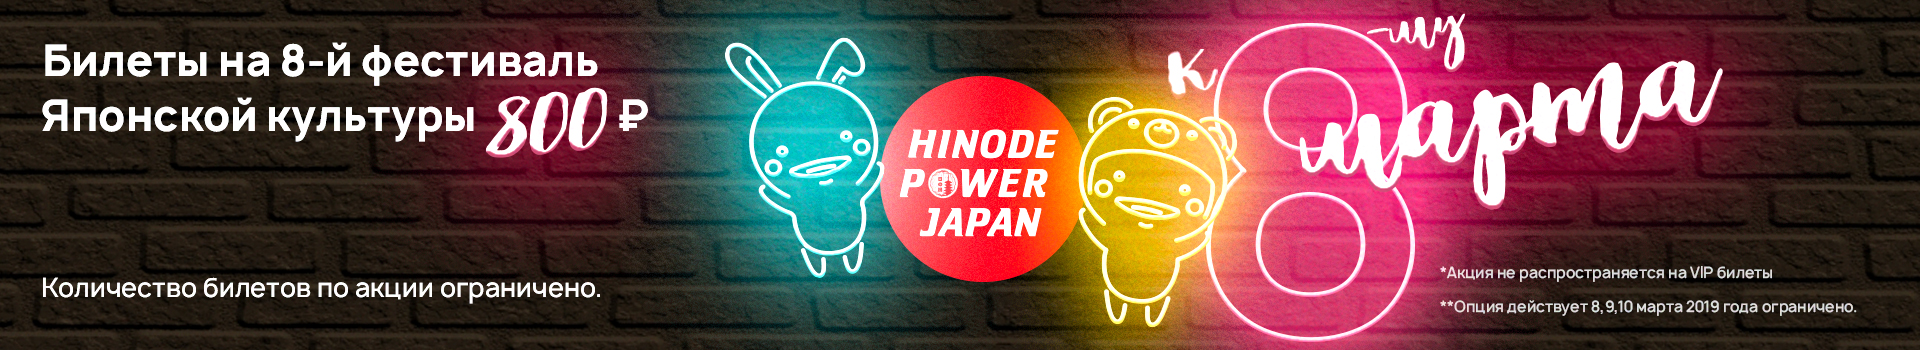 билеты 8 марта Hinode Power Japan 2019